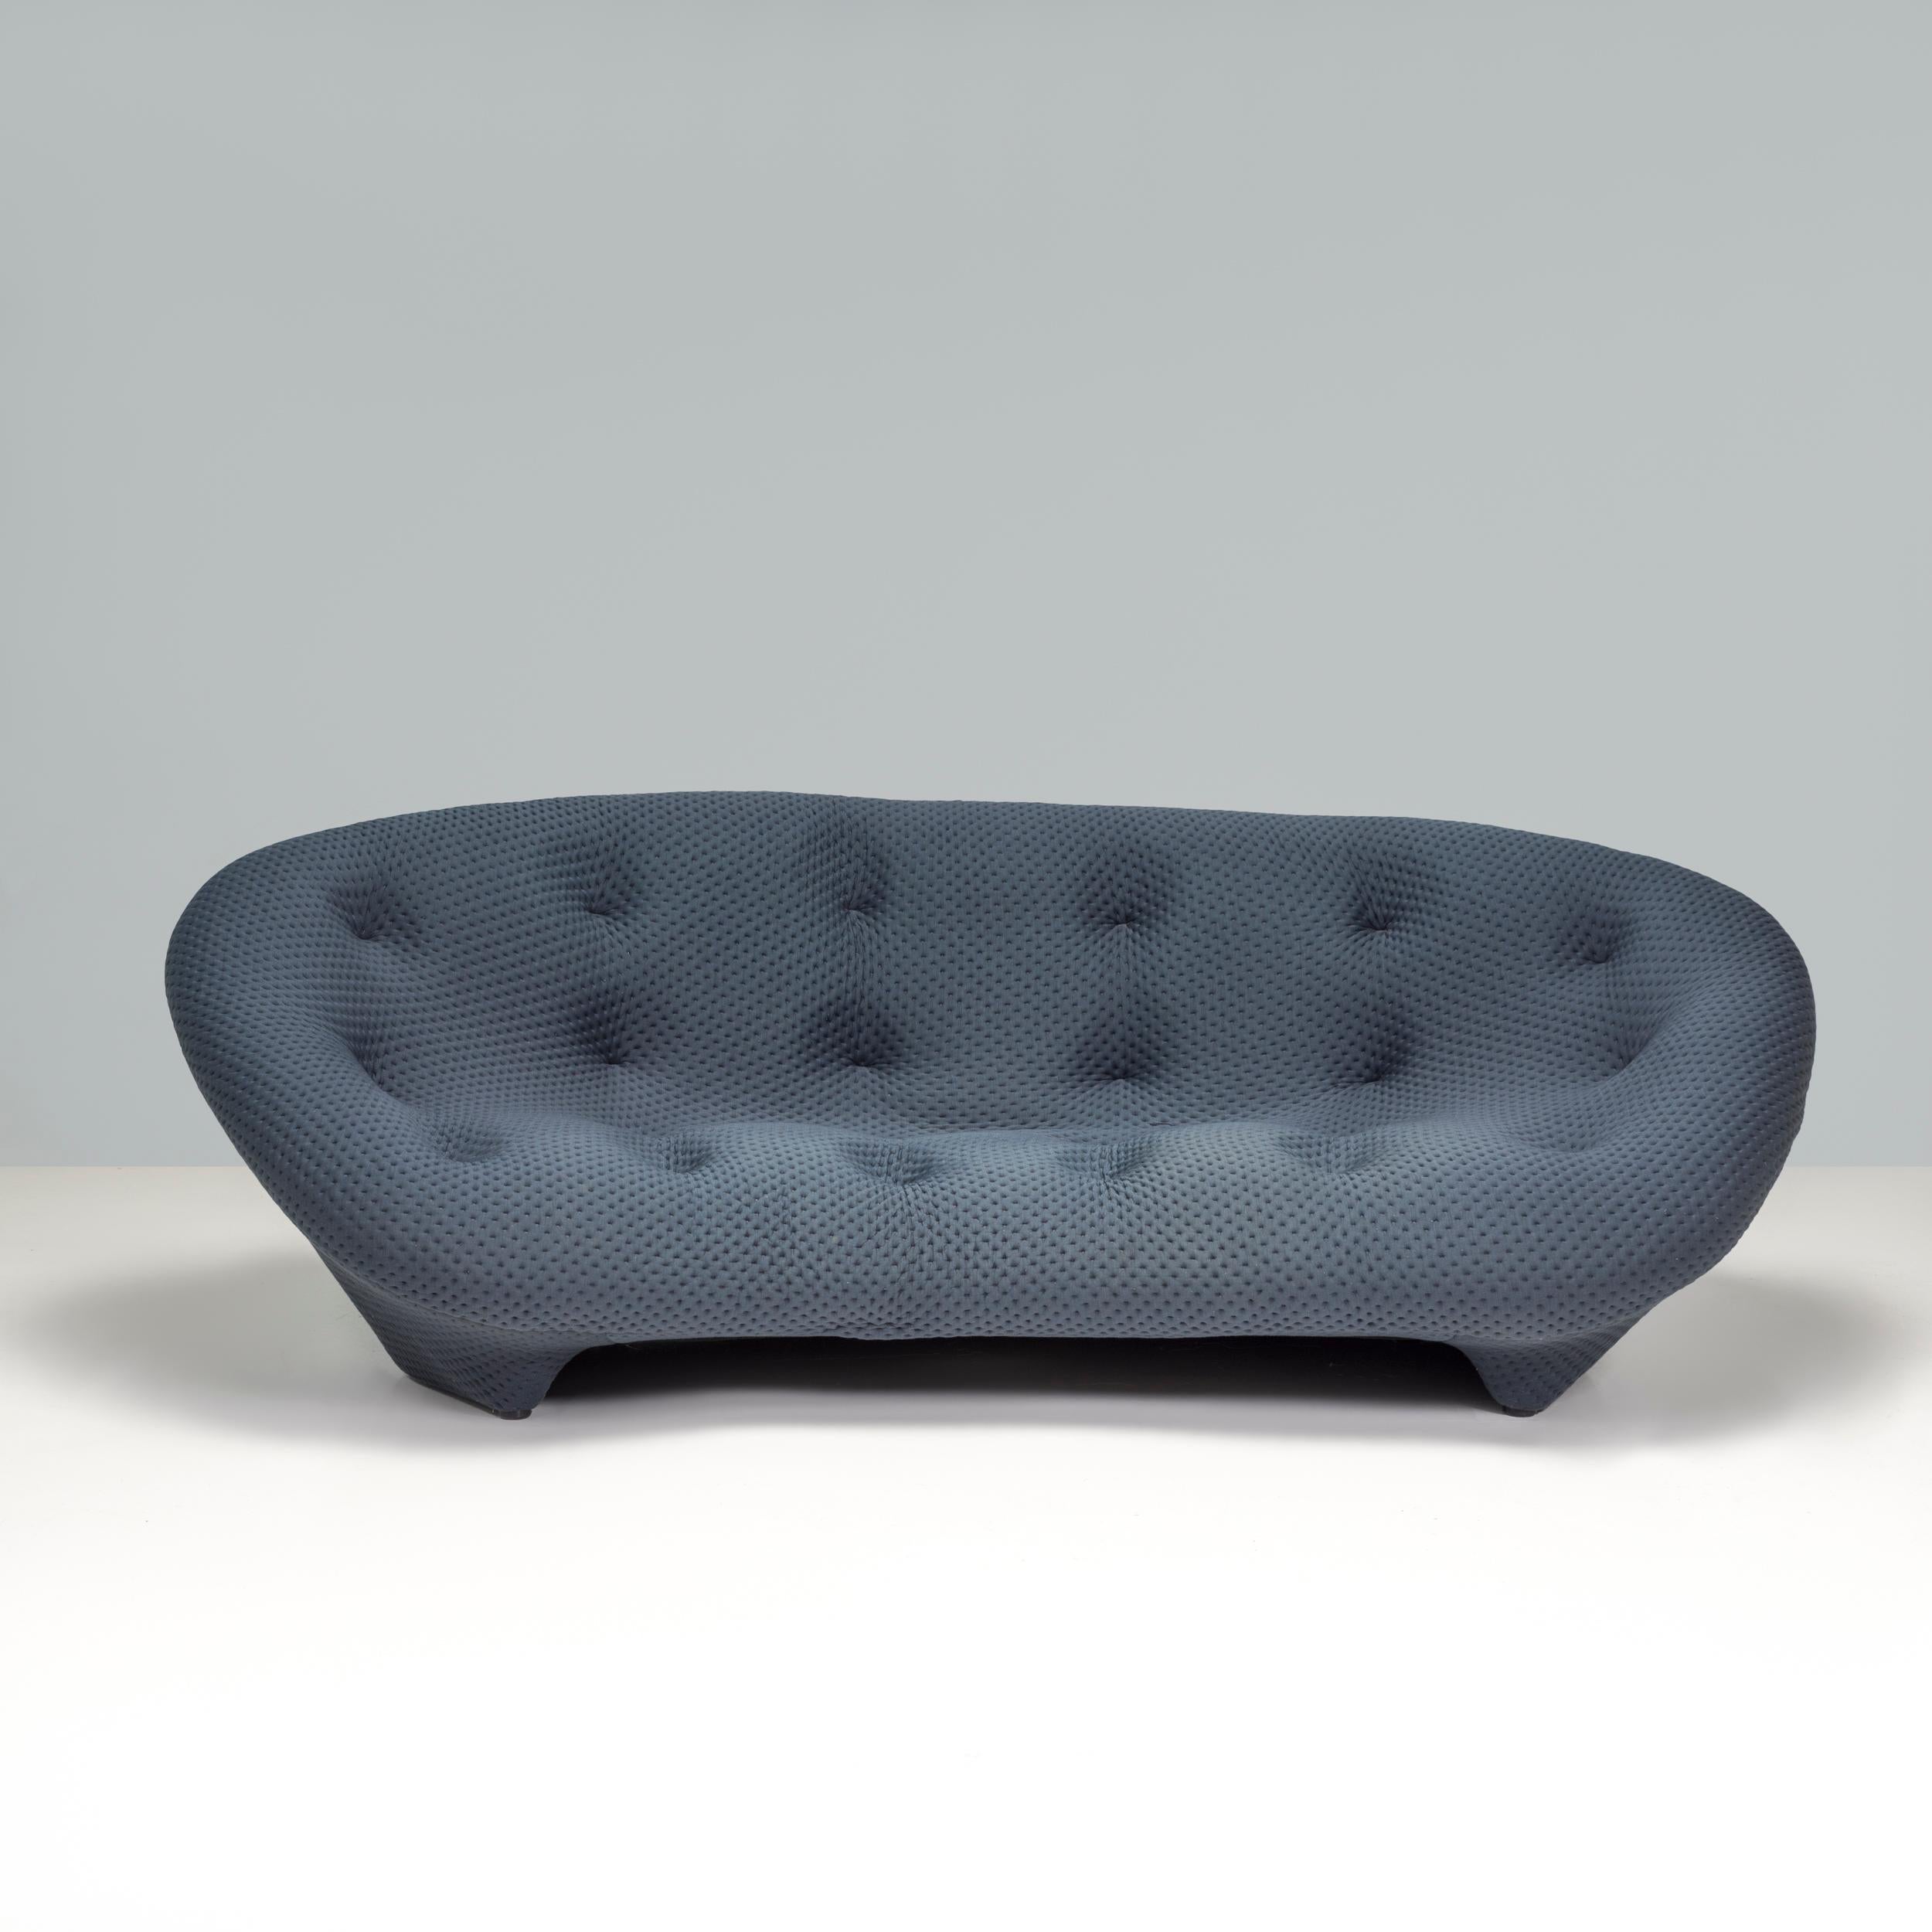 Conçu à l'origine par Erwan et Ronan Bouroullec pour Ligne Roset en 2011, le canapé Pluom est un fantastique exemple de design moderne. 

La forme organique est formée à partir d'acier tubulaire et de treillis métallique avec des couches de mousse